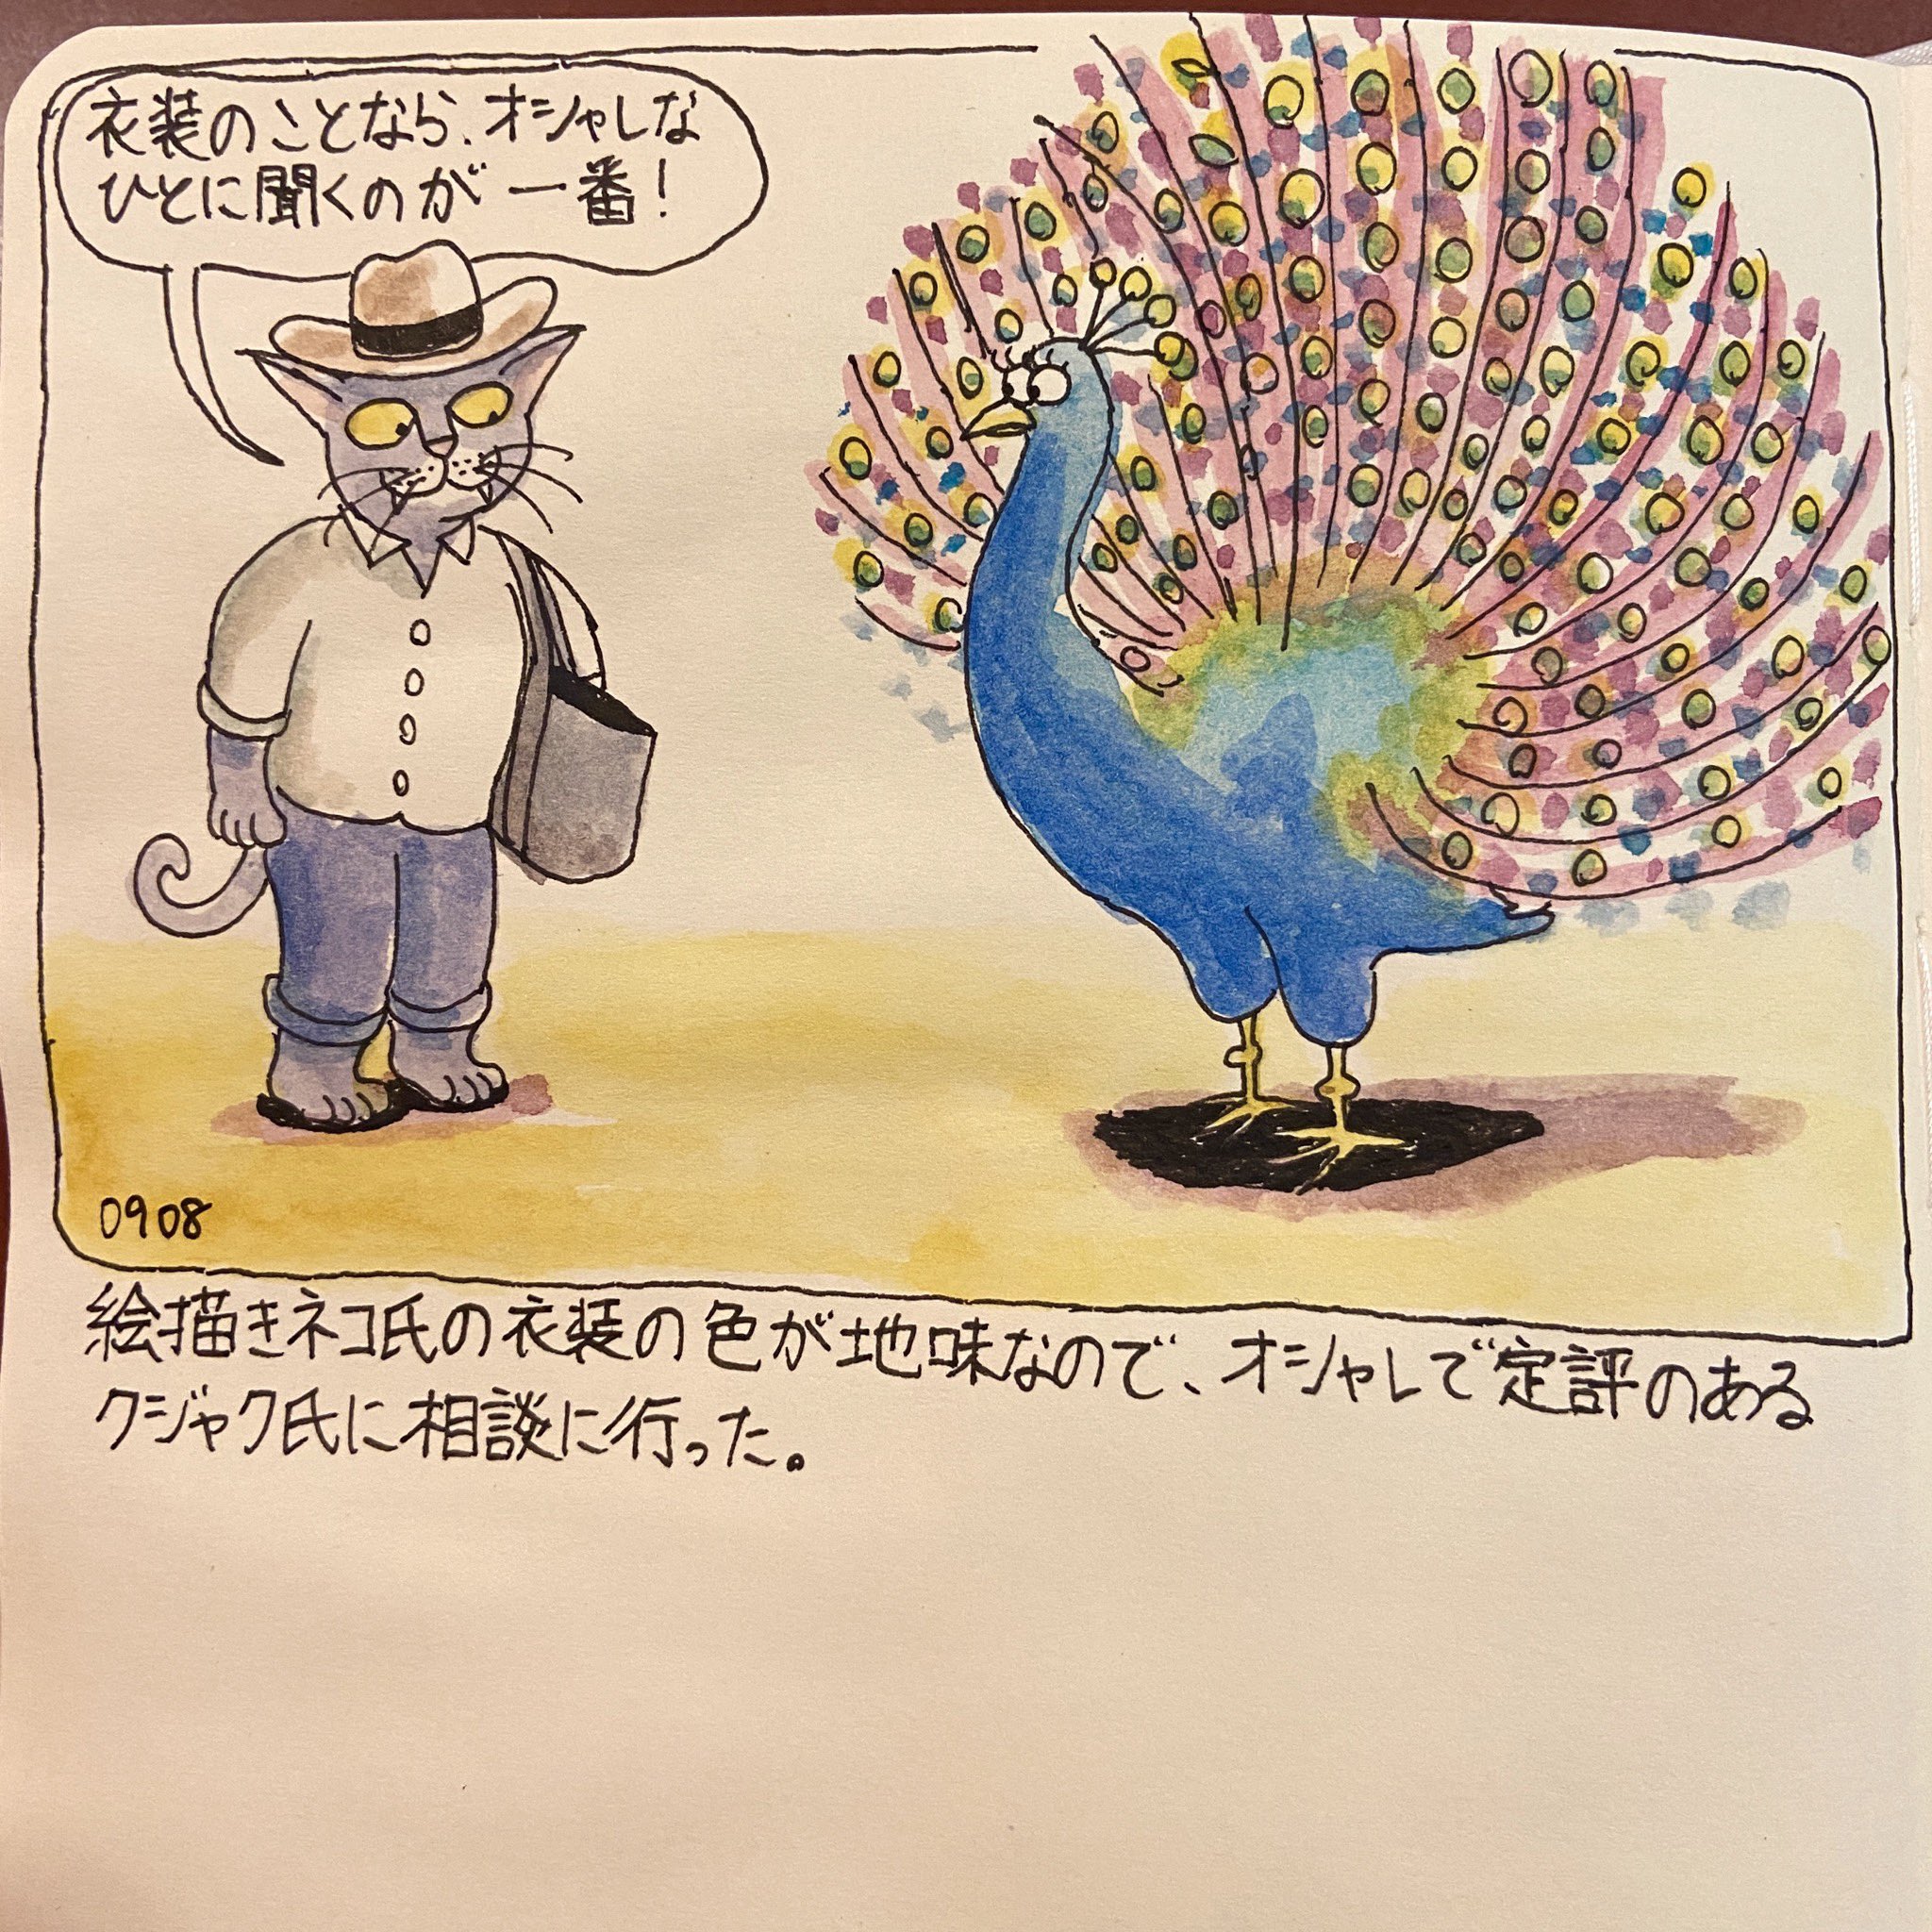 横山 ゴロー ファッションについてクジャク氏のアドバイスを受けに行った絵描きネコ氏 絵 イラスト 水彩画 ネコ クジャク オシャレ